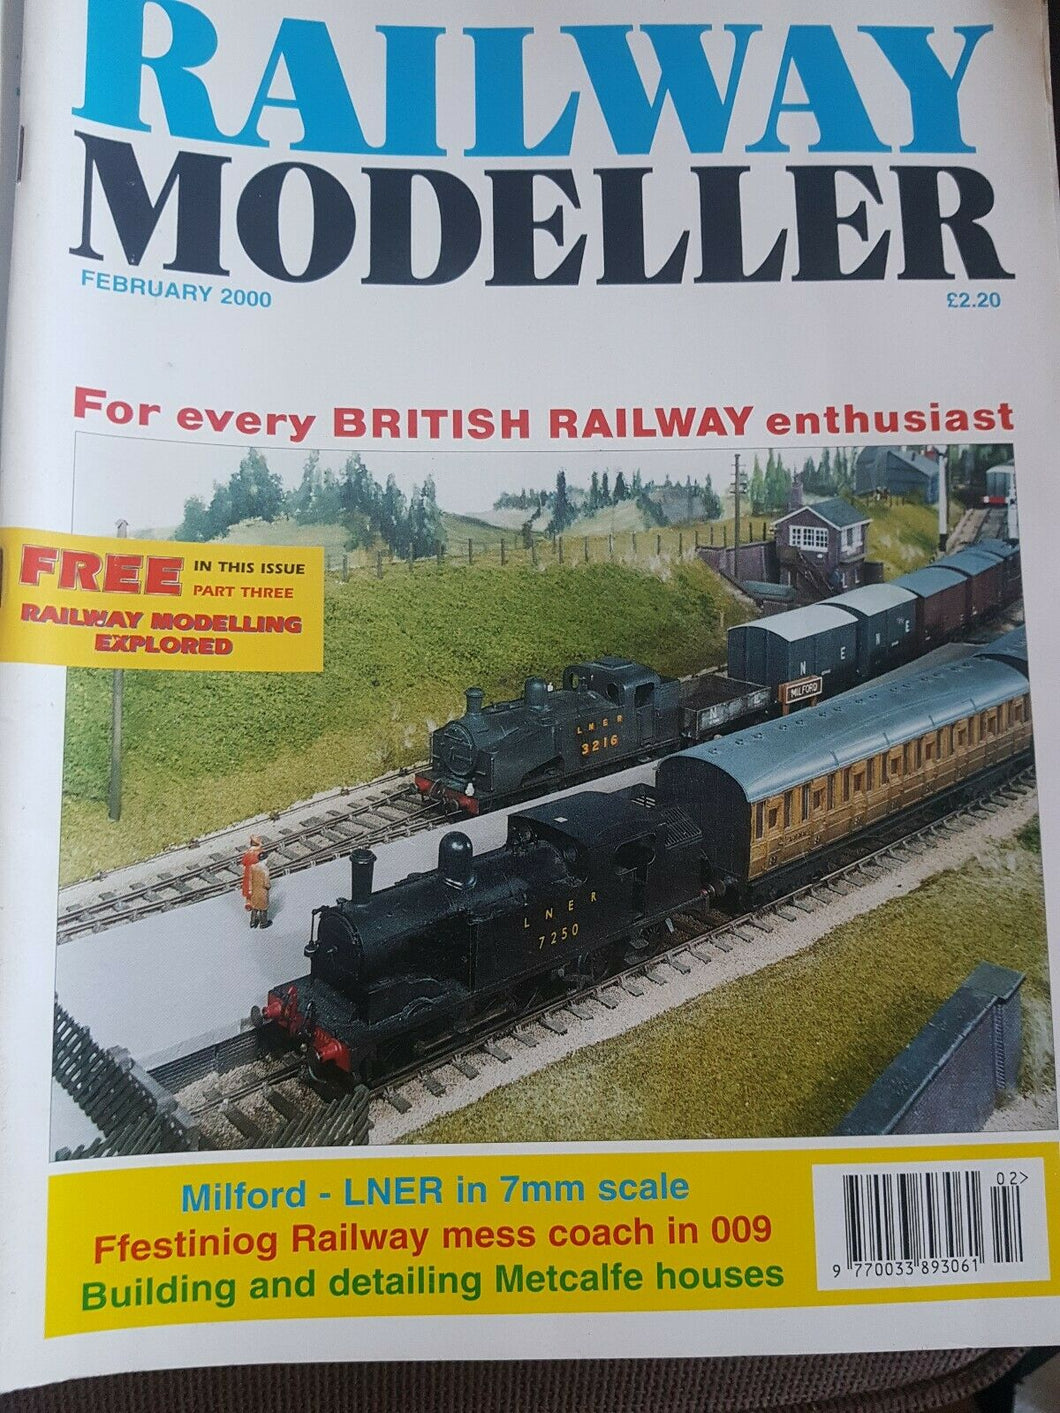 Railway modeller magazine February 2000